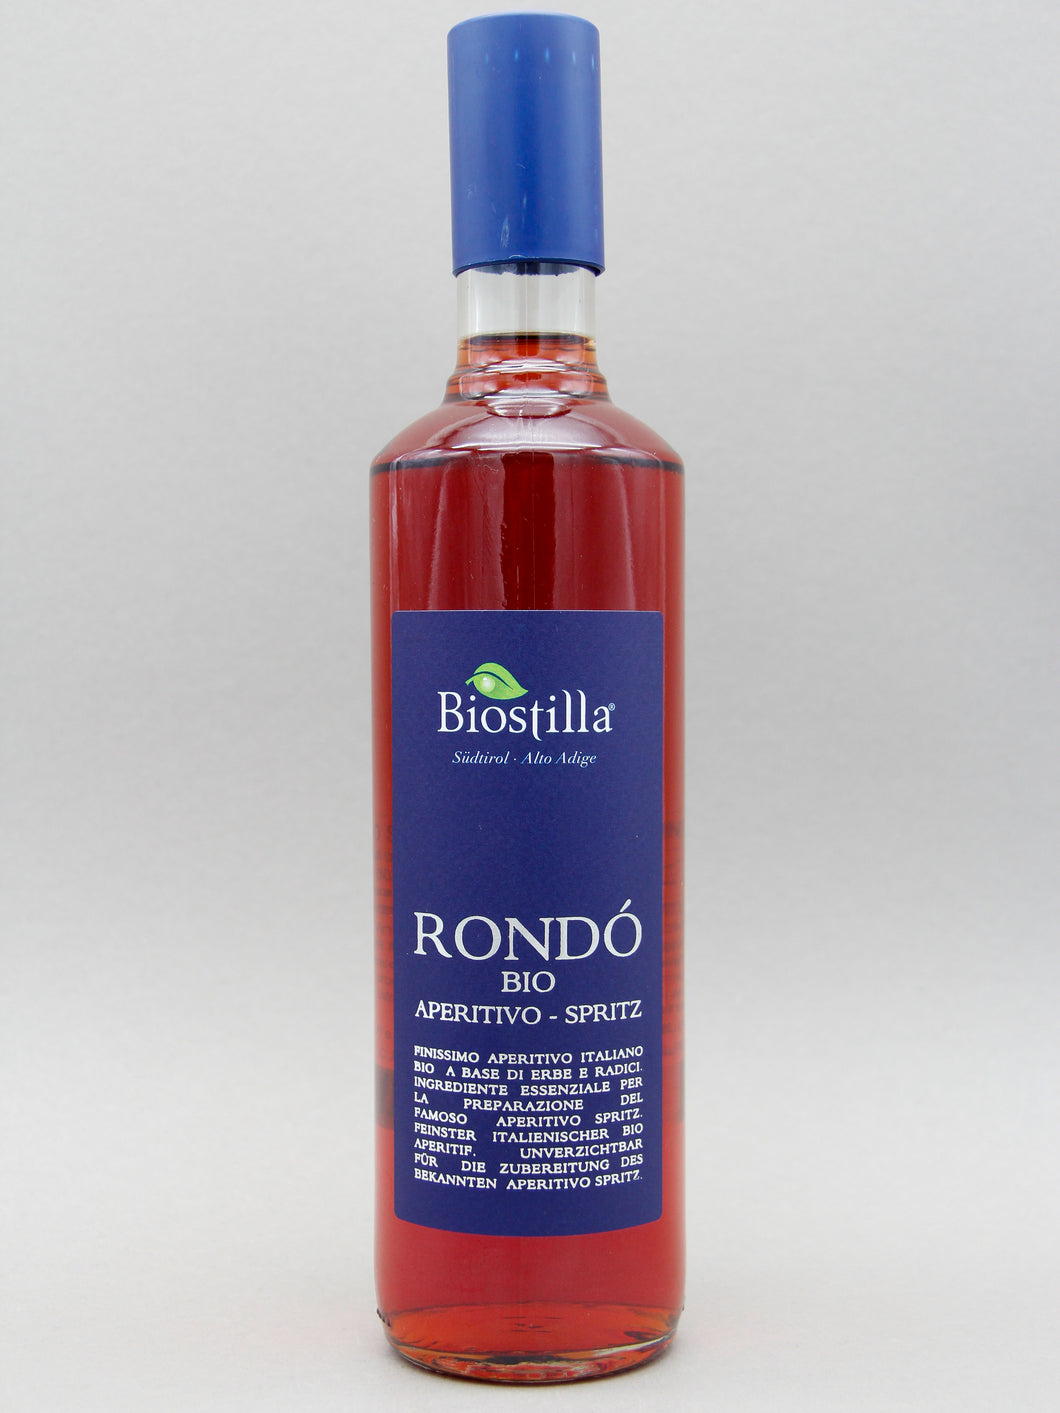 Rondo Bio Aperitivo-Spritz, Italy (15%, 70cl)